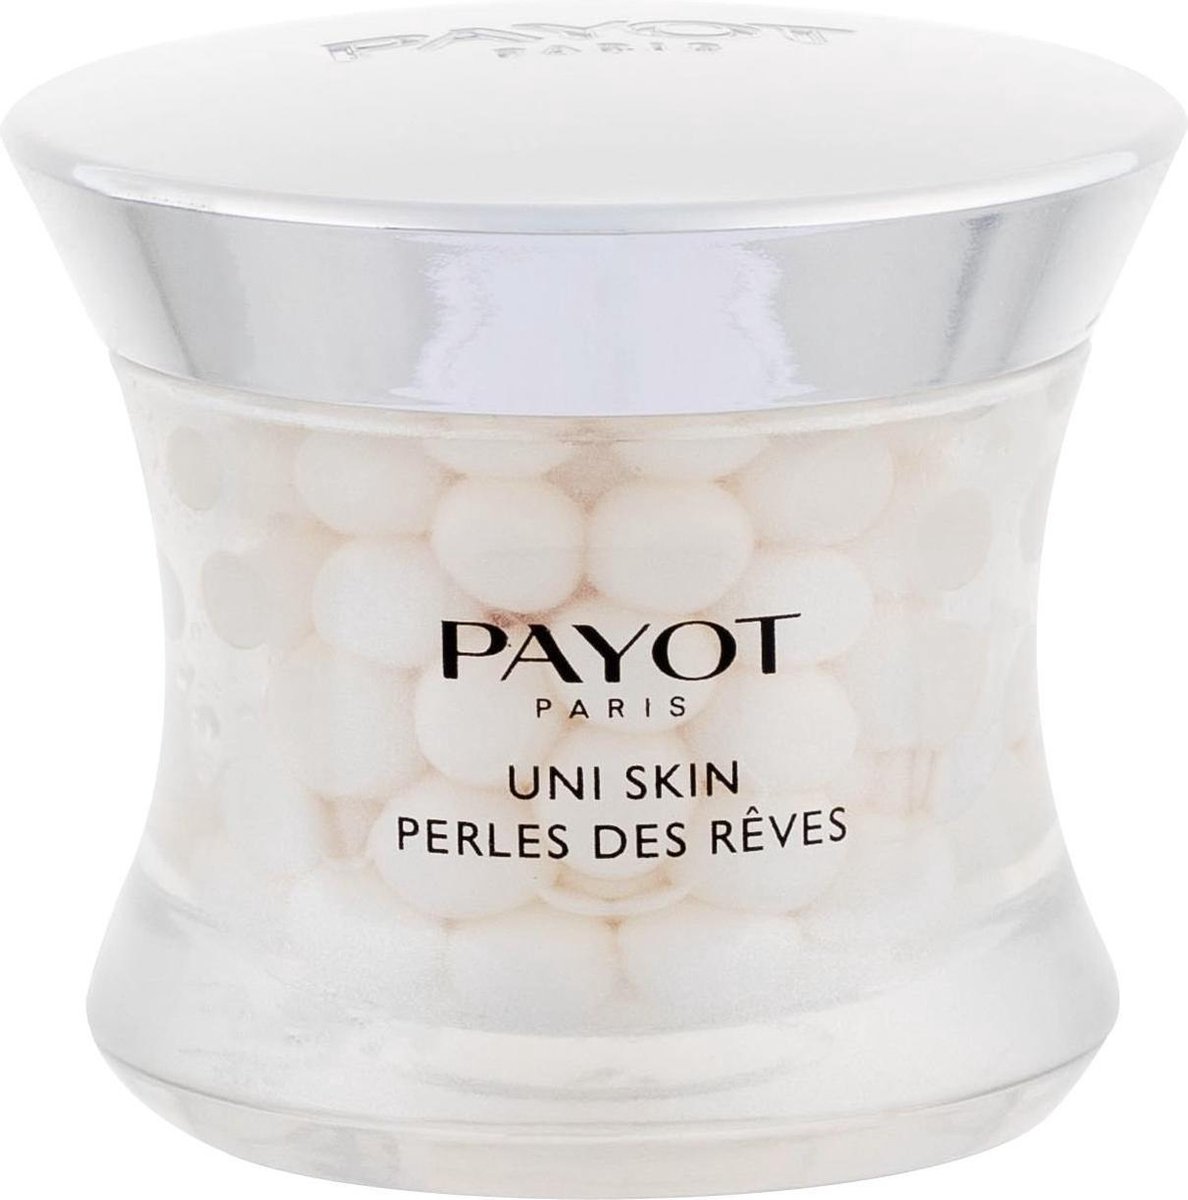 Payot - Uni Skin Perles De Reves - Noční péče proti tmavým skvrnám - 38.0g